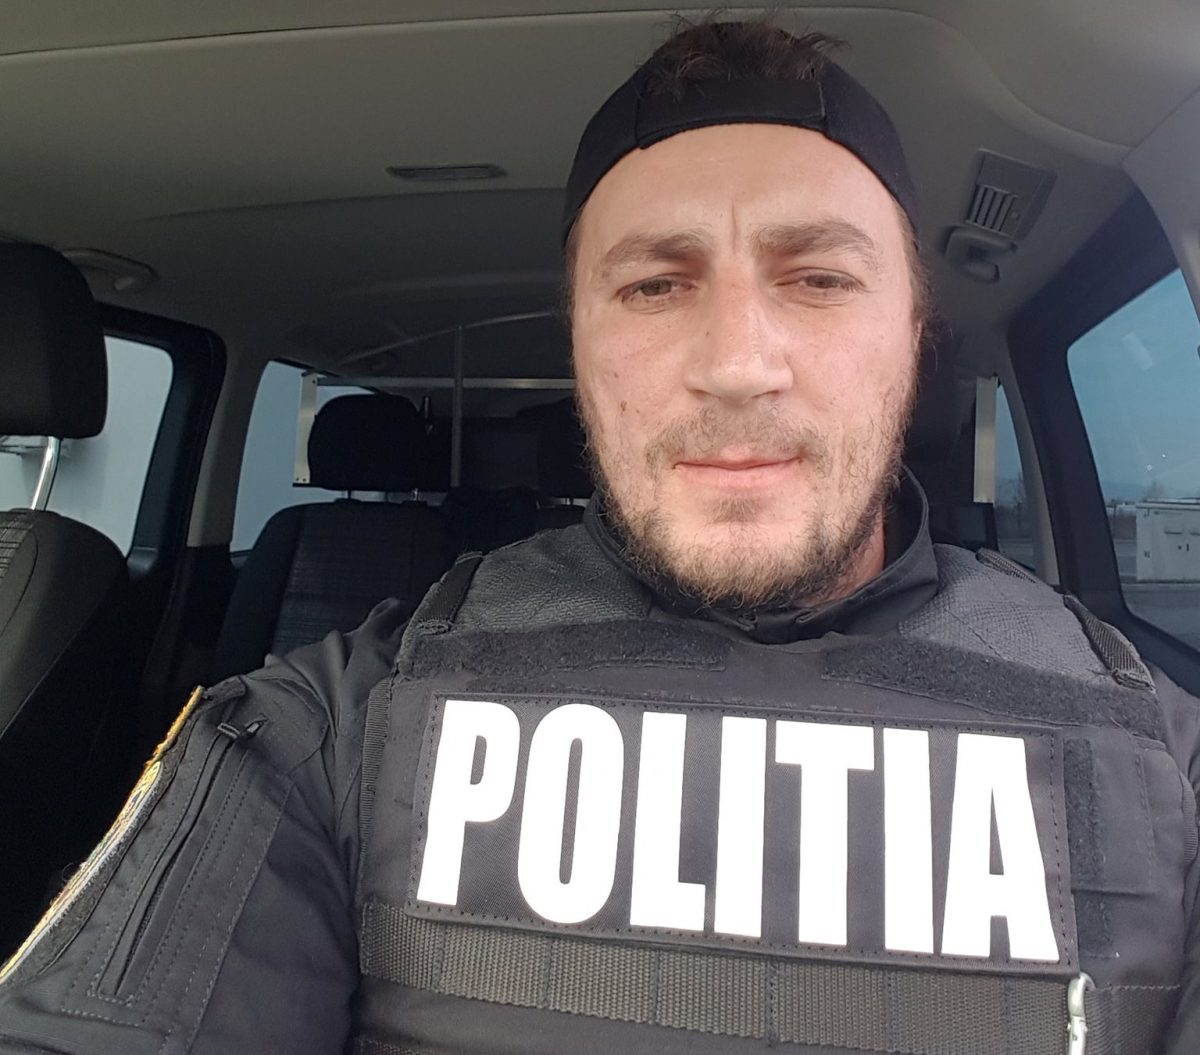 Marian Godină, renumitul polițist, vrea să-și dea demisia din cauza salariului. Incredibil cât de puțin câștigă